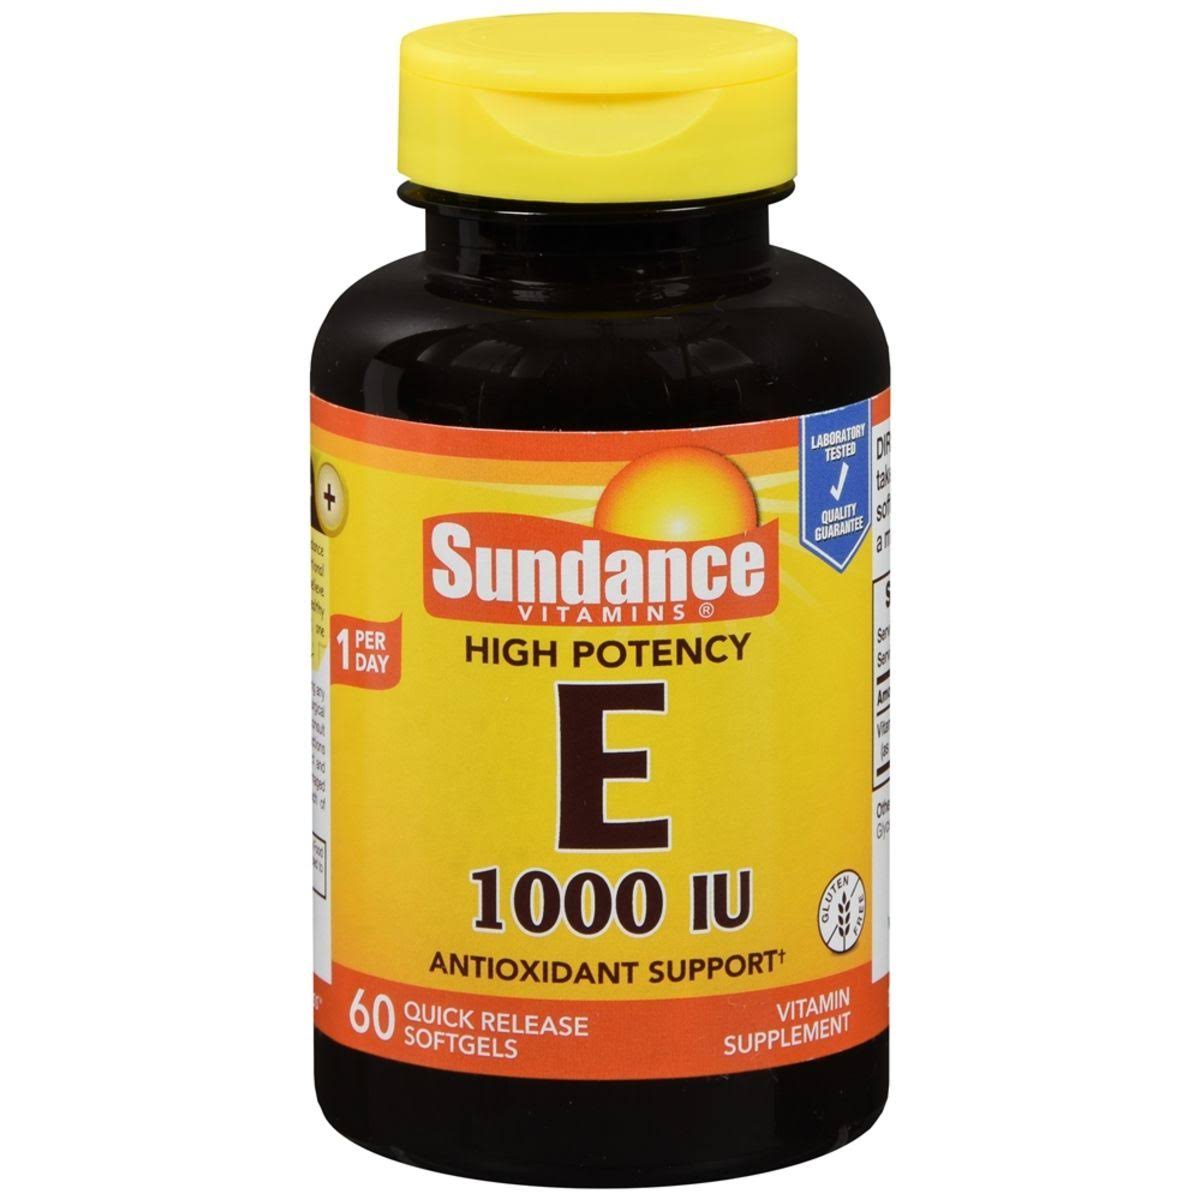 Sundance Vitamins High Potency E Vitamin Quick Release